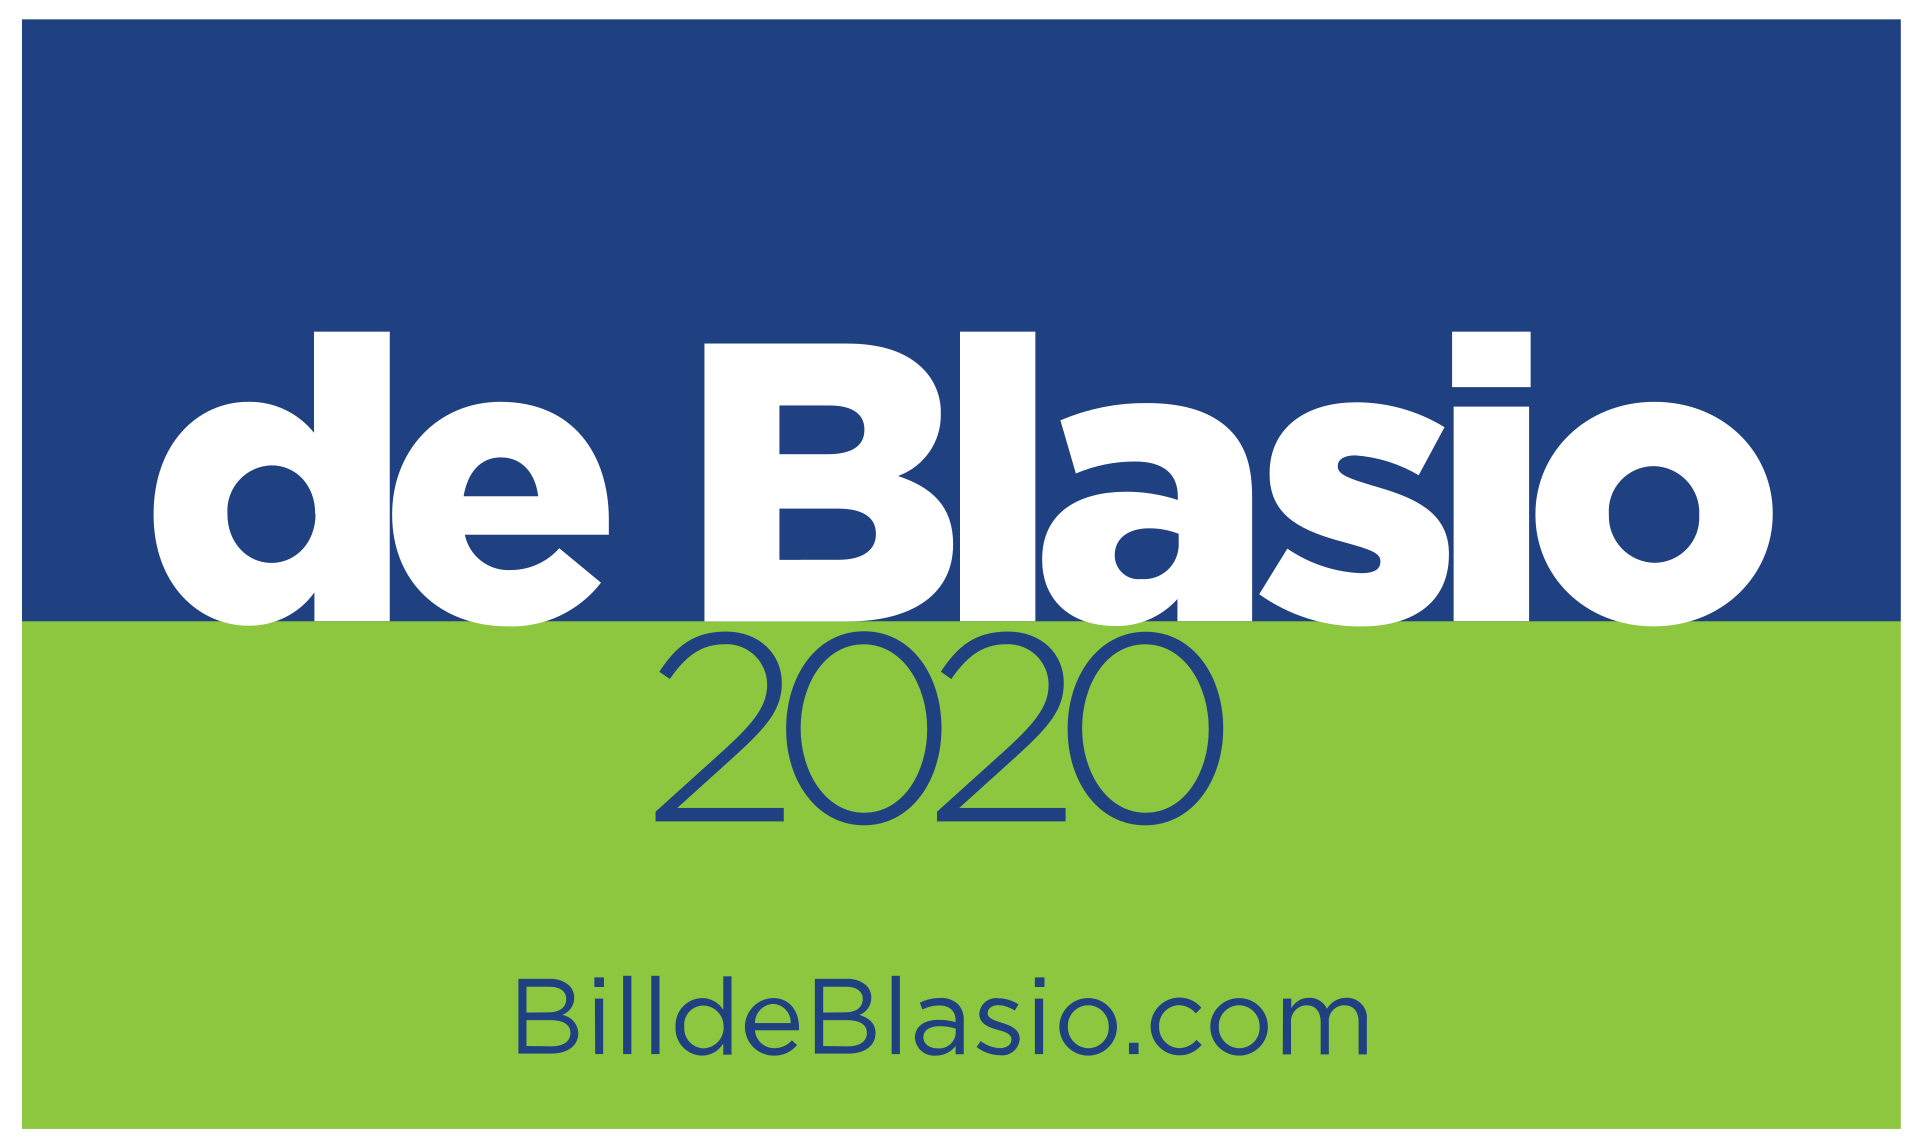 Bill de Blasio campaign logo